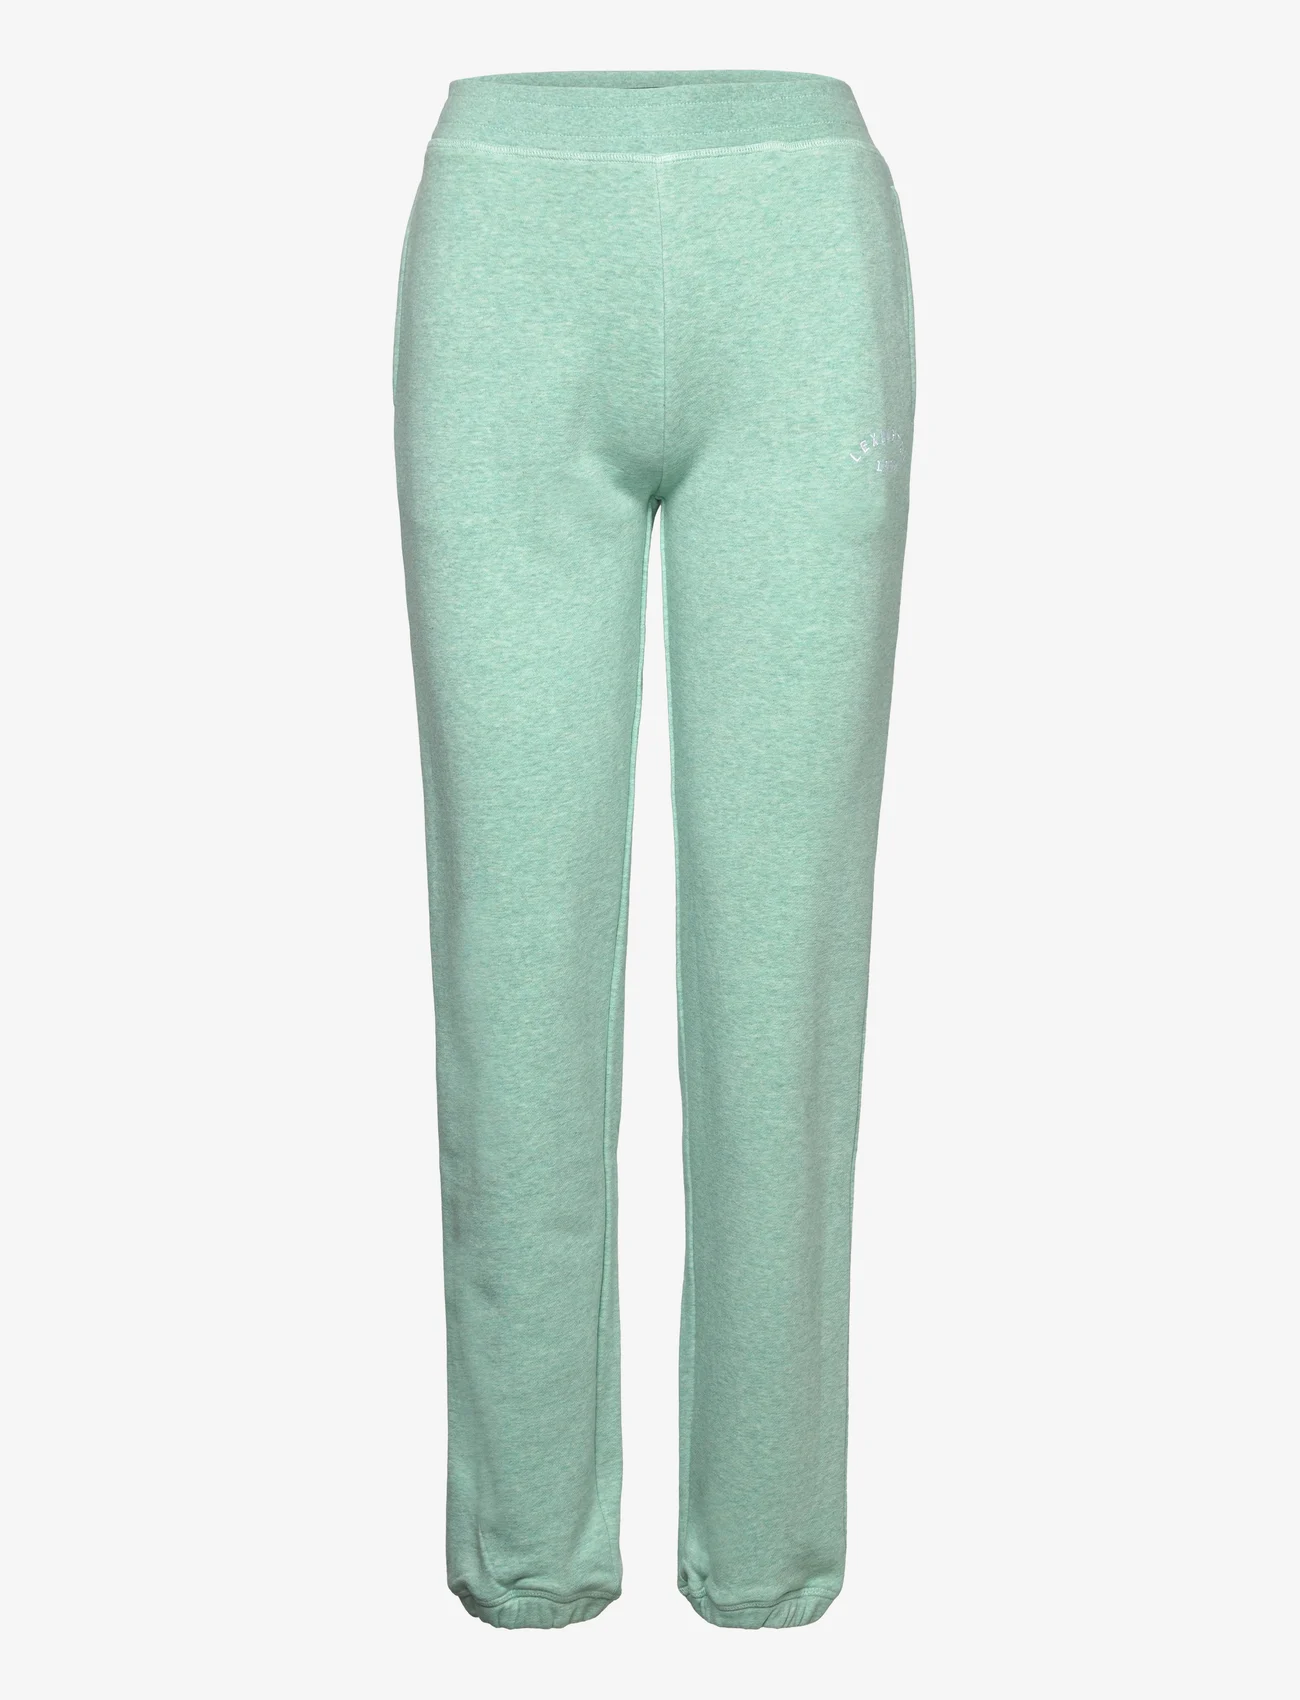 Lexington Clothing - Noelle Pants - naised - light green melange - 0